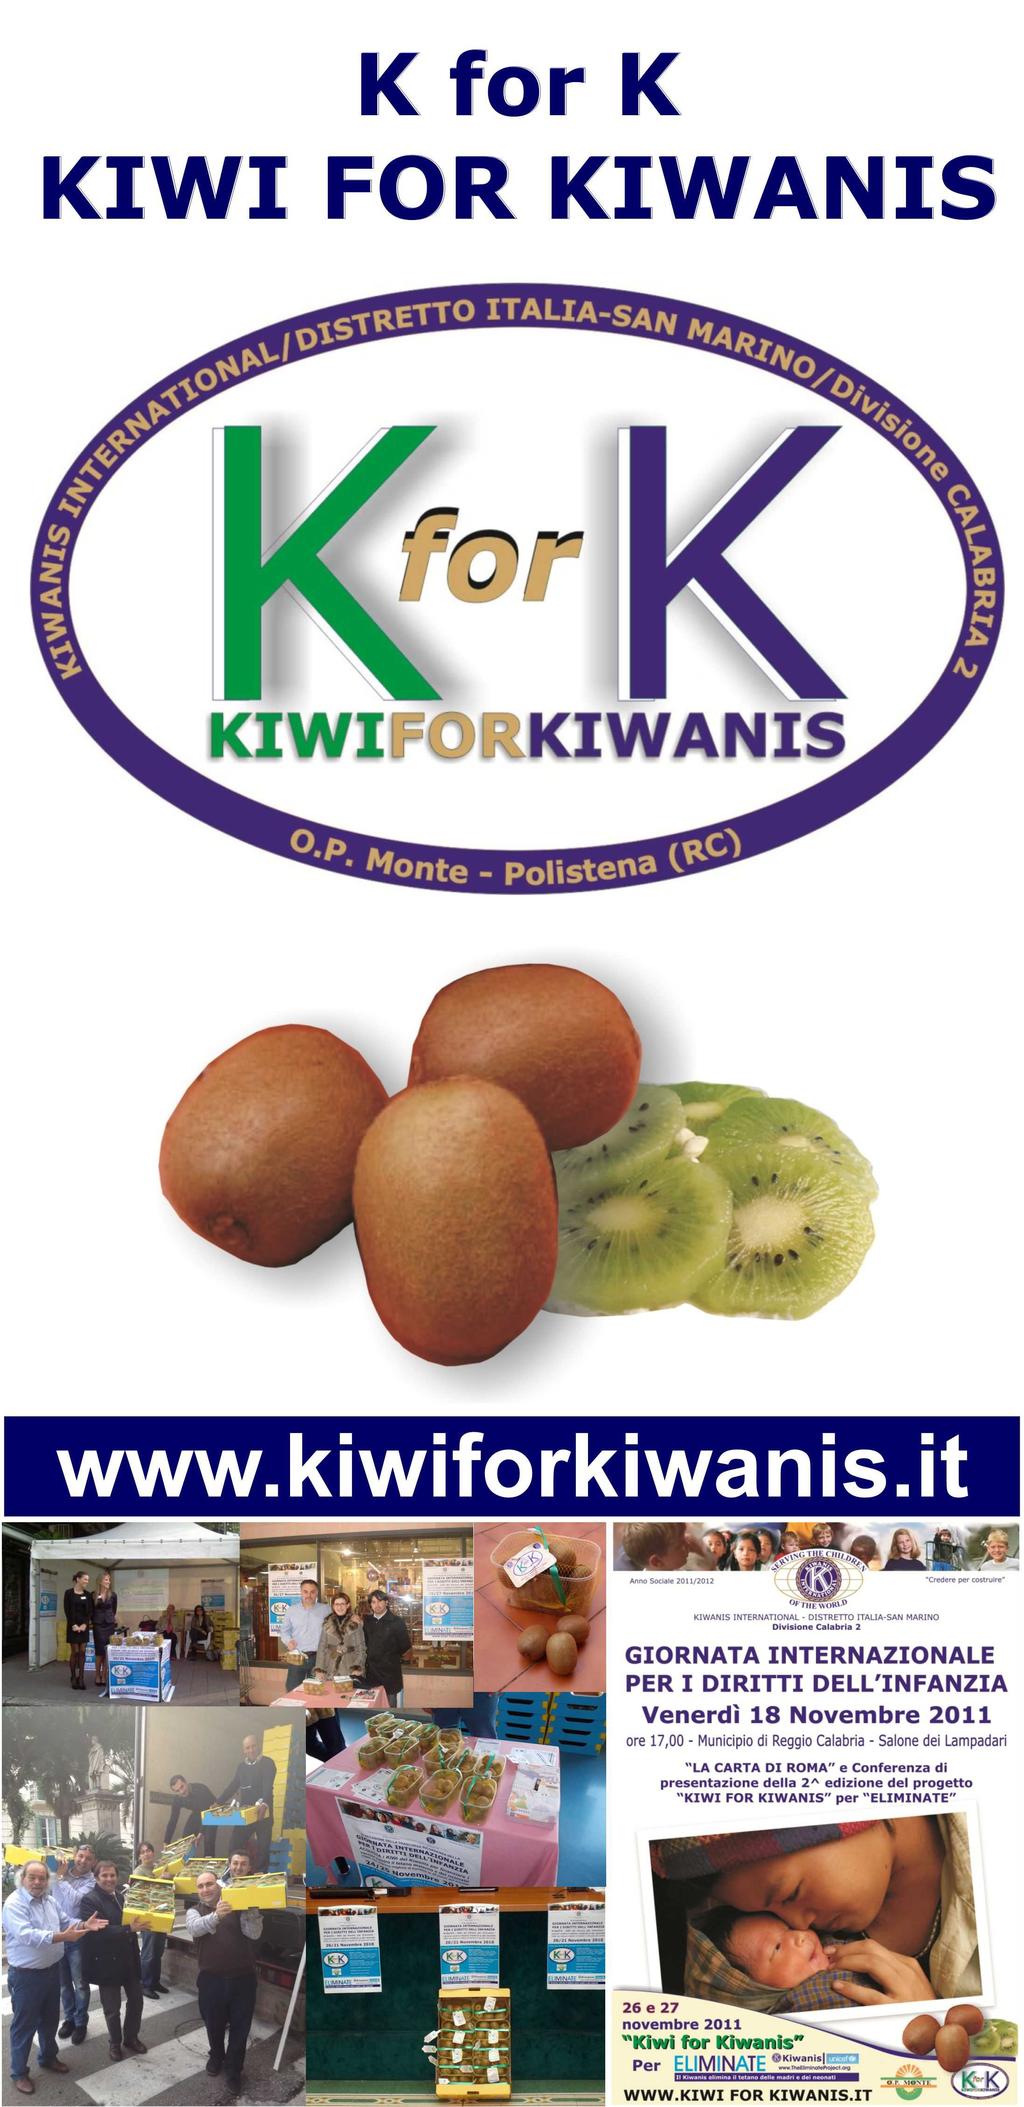 Evento Kiwi for K for K è un progetto di fundraising destinato sia ai services locali sia al service internazionale ELIMINATE.